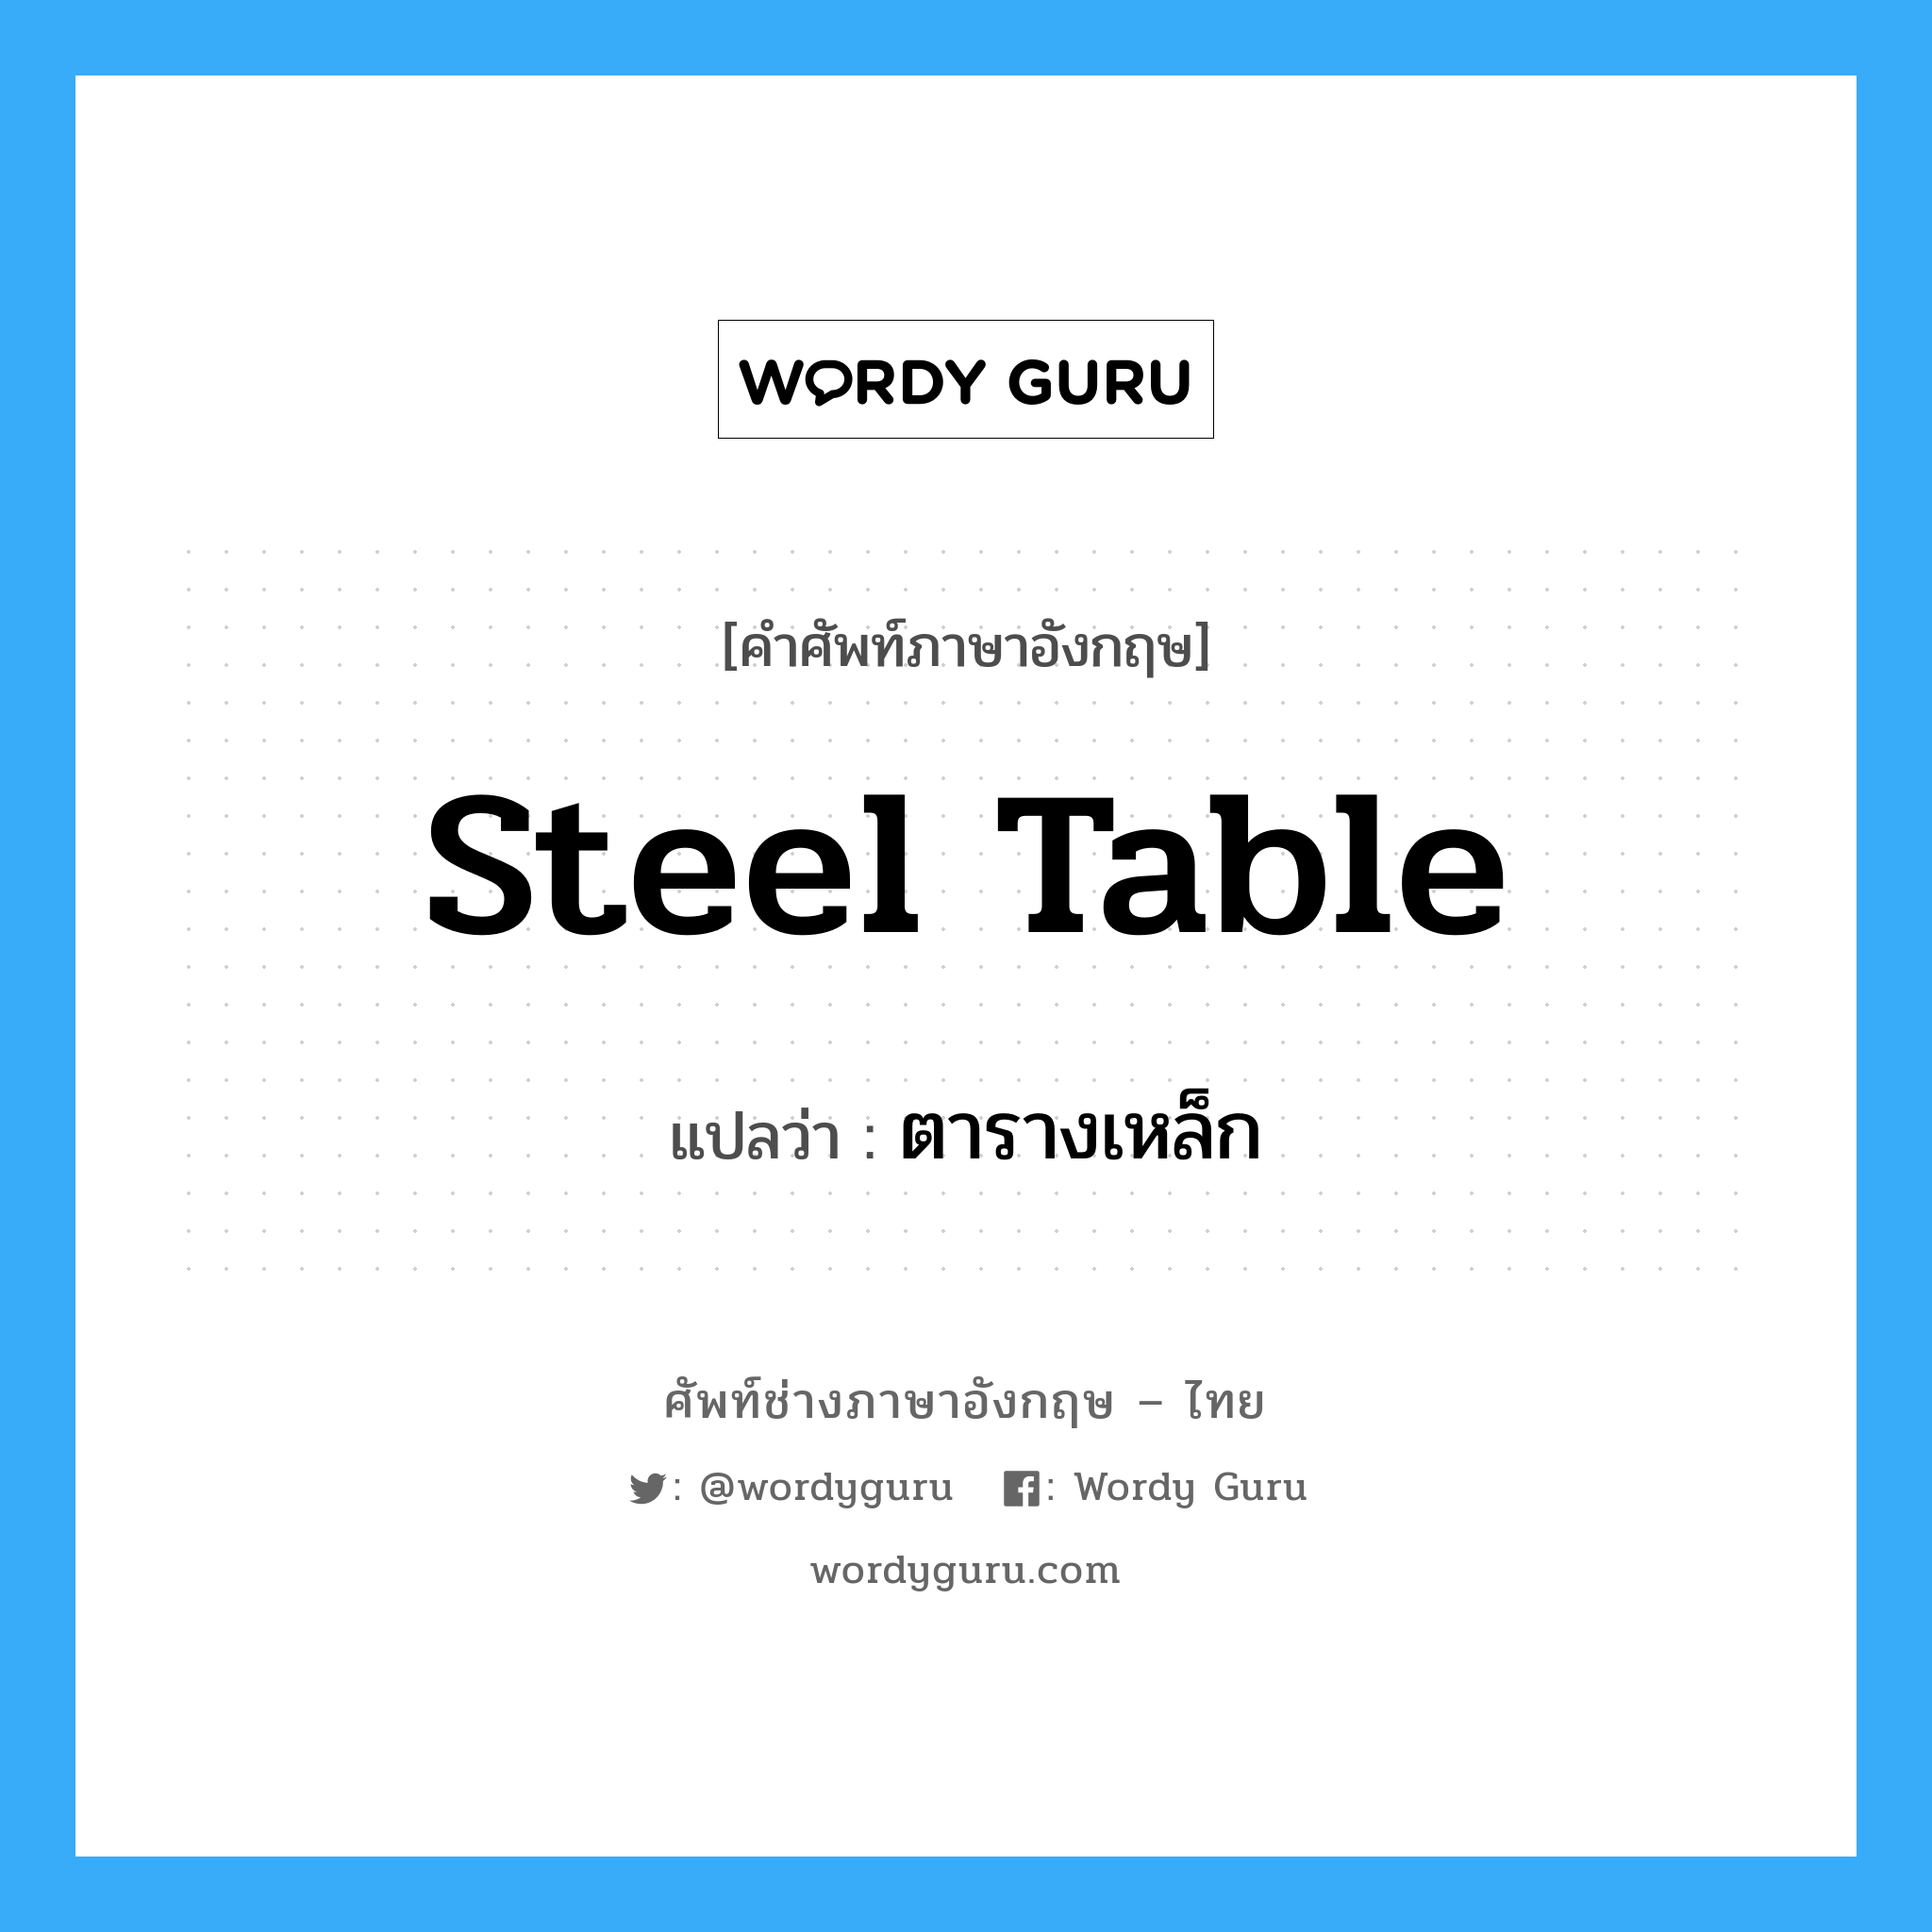 ตารางเหล็ก ภาษาอังกฤษ?, คำศัพท์ช่างภาษาอังกฤษ - ไทย ตารางเหล็ก คำศัพท์ภาษาอังกฤษ ตารางเหล็ก แปลว่า steel table